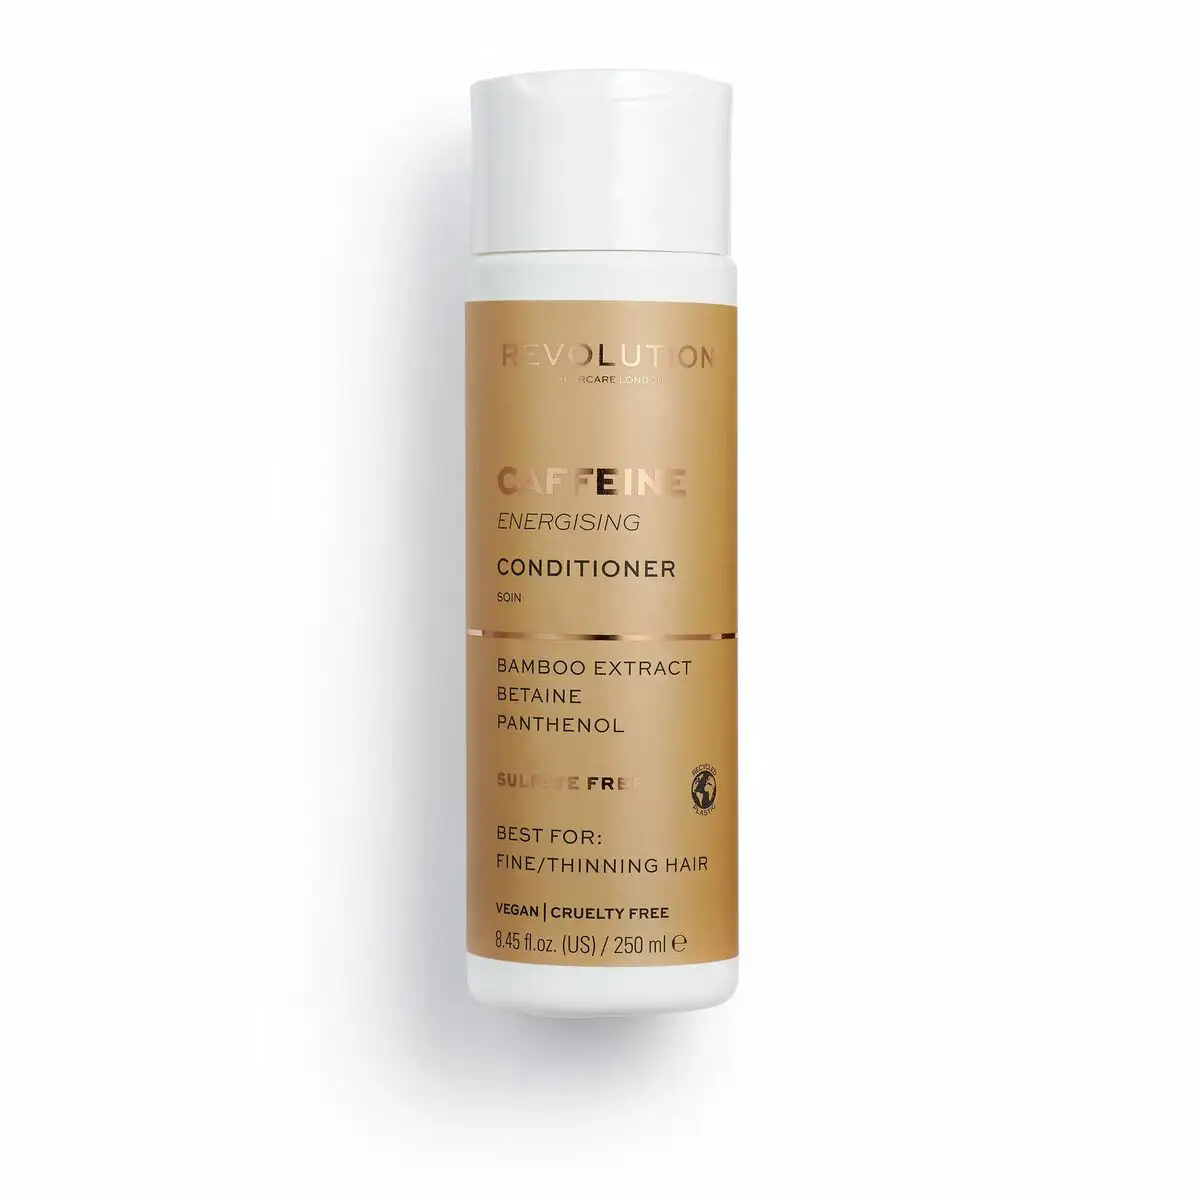 Apres shampooing revolution hair care london caffeine bambou energisant 250 ml _9298. DIAYTAR SENEGAL - Là où Chaque Achat a du Sens. Explorez notre gamme et choisissez des produits qui racontent une histoire, du traditionnel au contemporain.